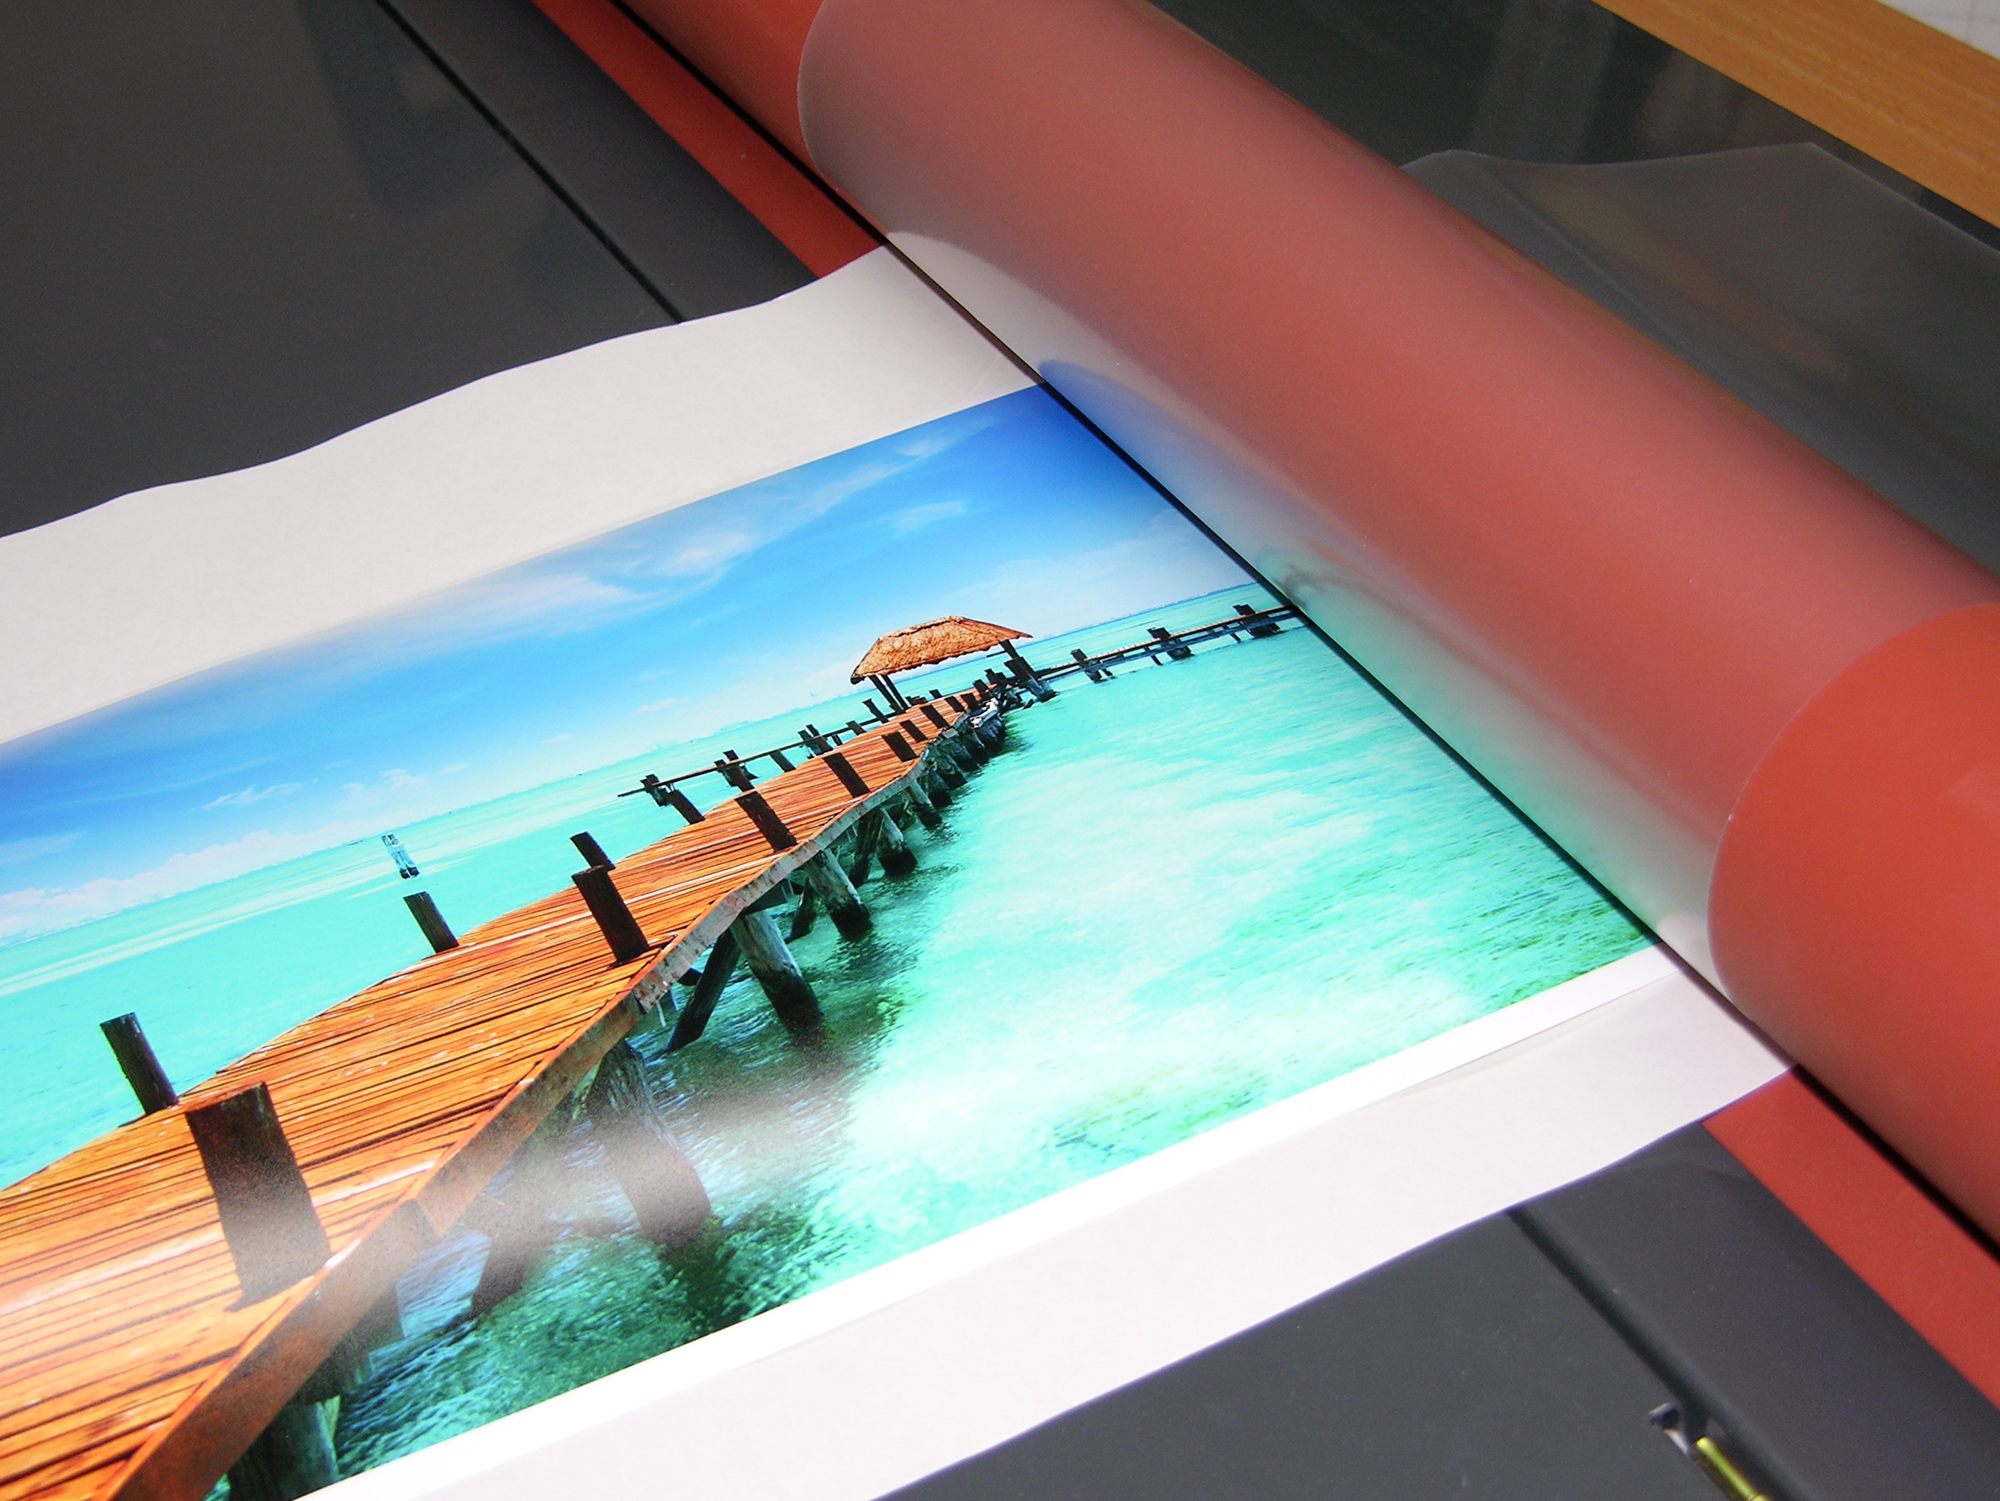 laminování potištěného fotopapíru při výrobě fotoobrazu na desce